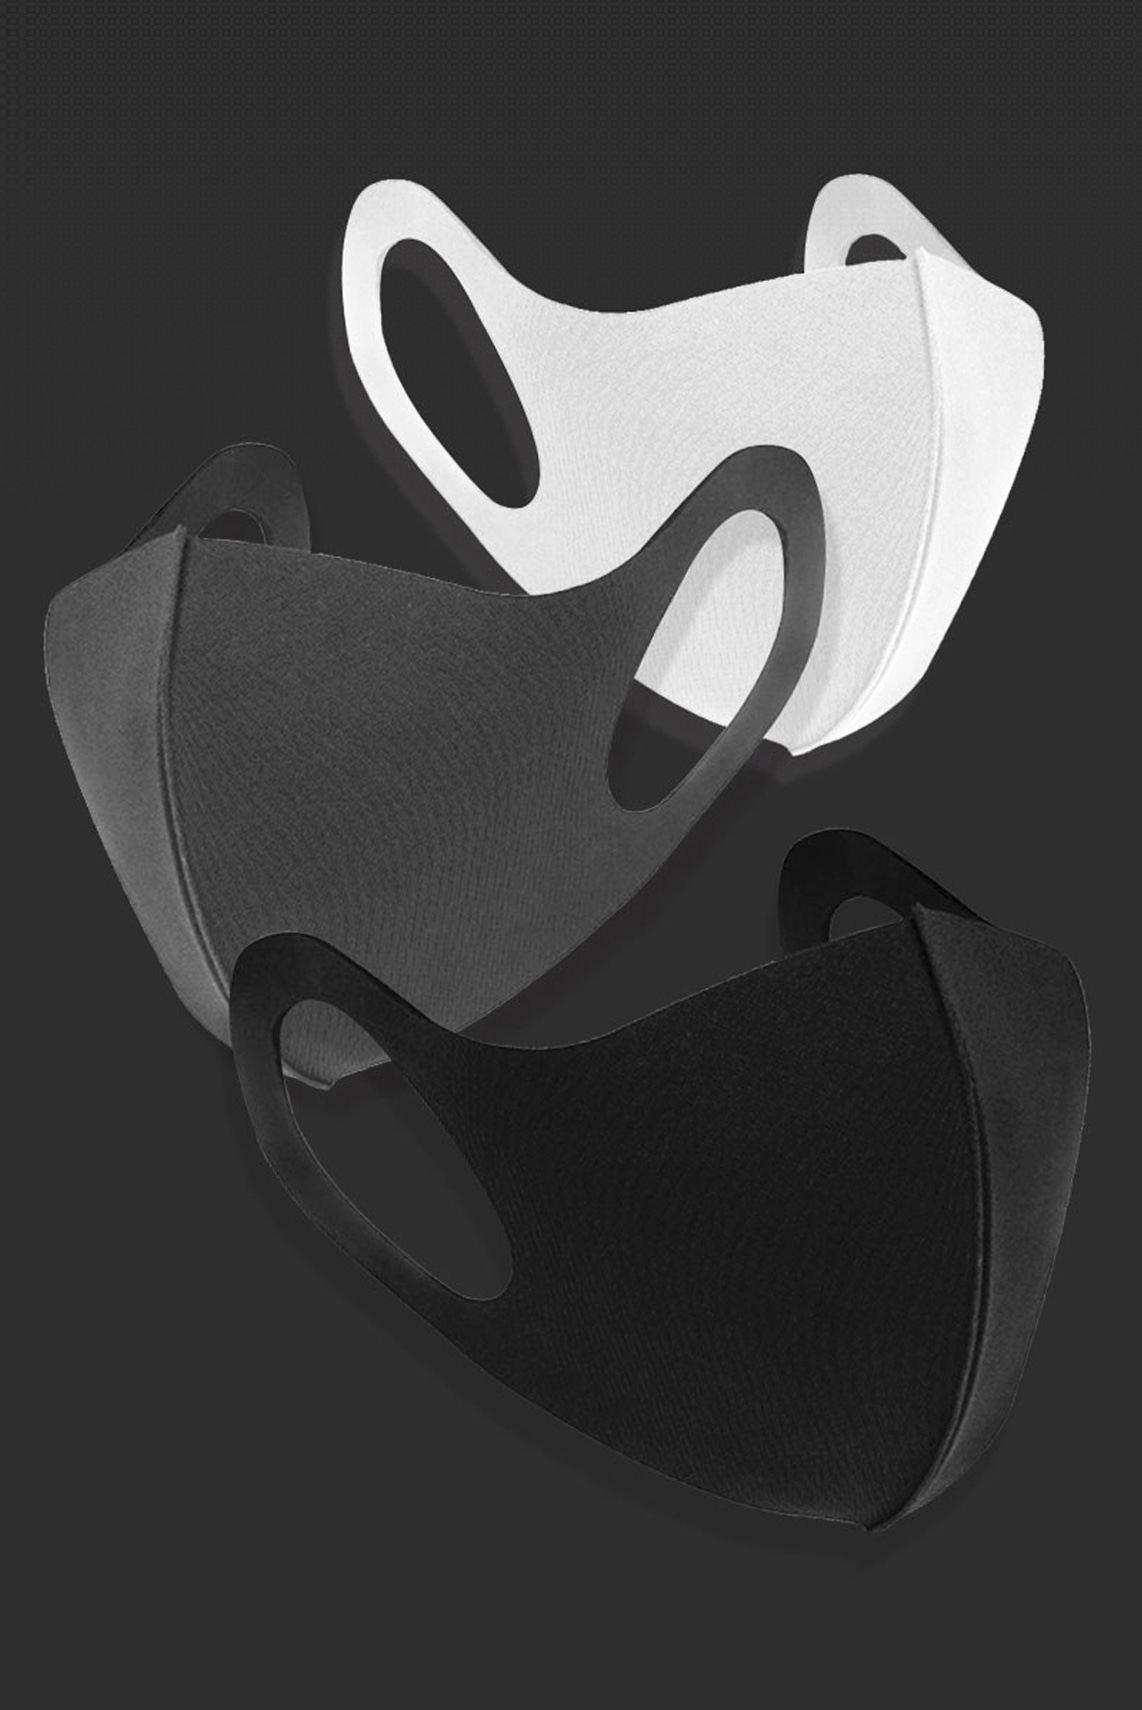 에센셜 기능성 3D 패션 마스크 (SEK품질인증마크 / 화이트)